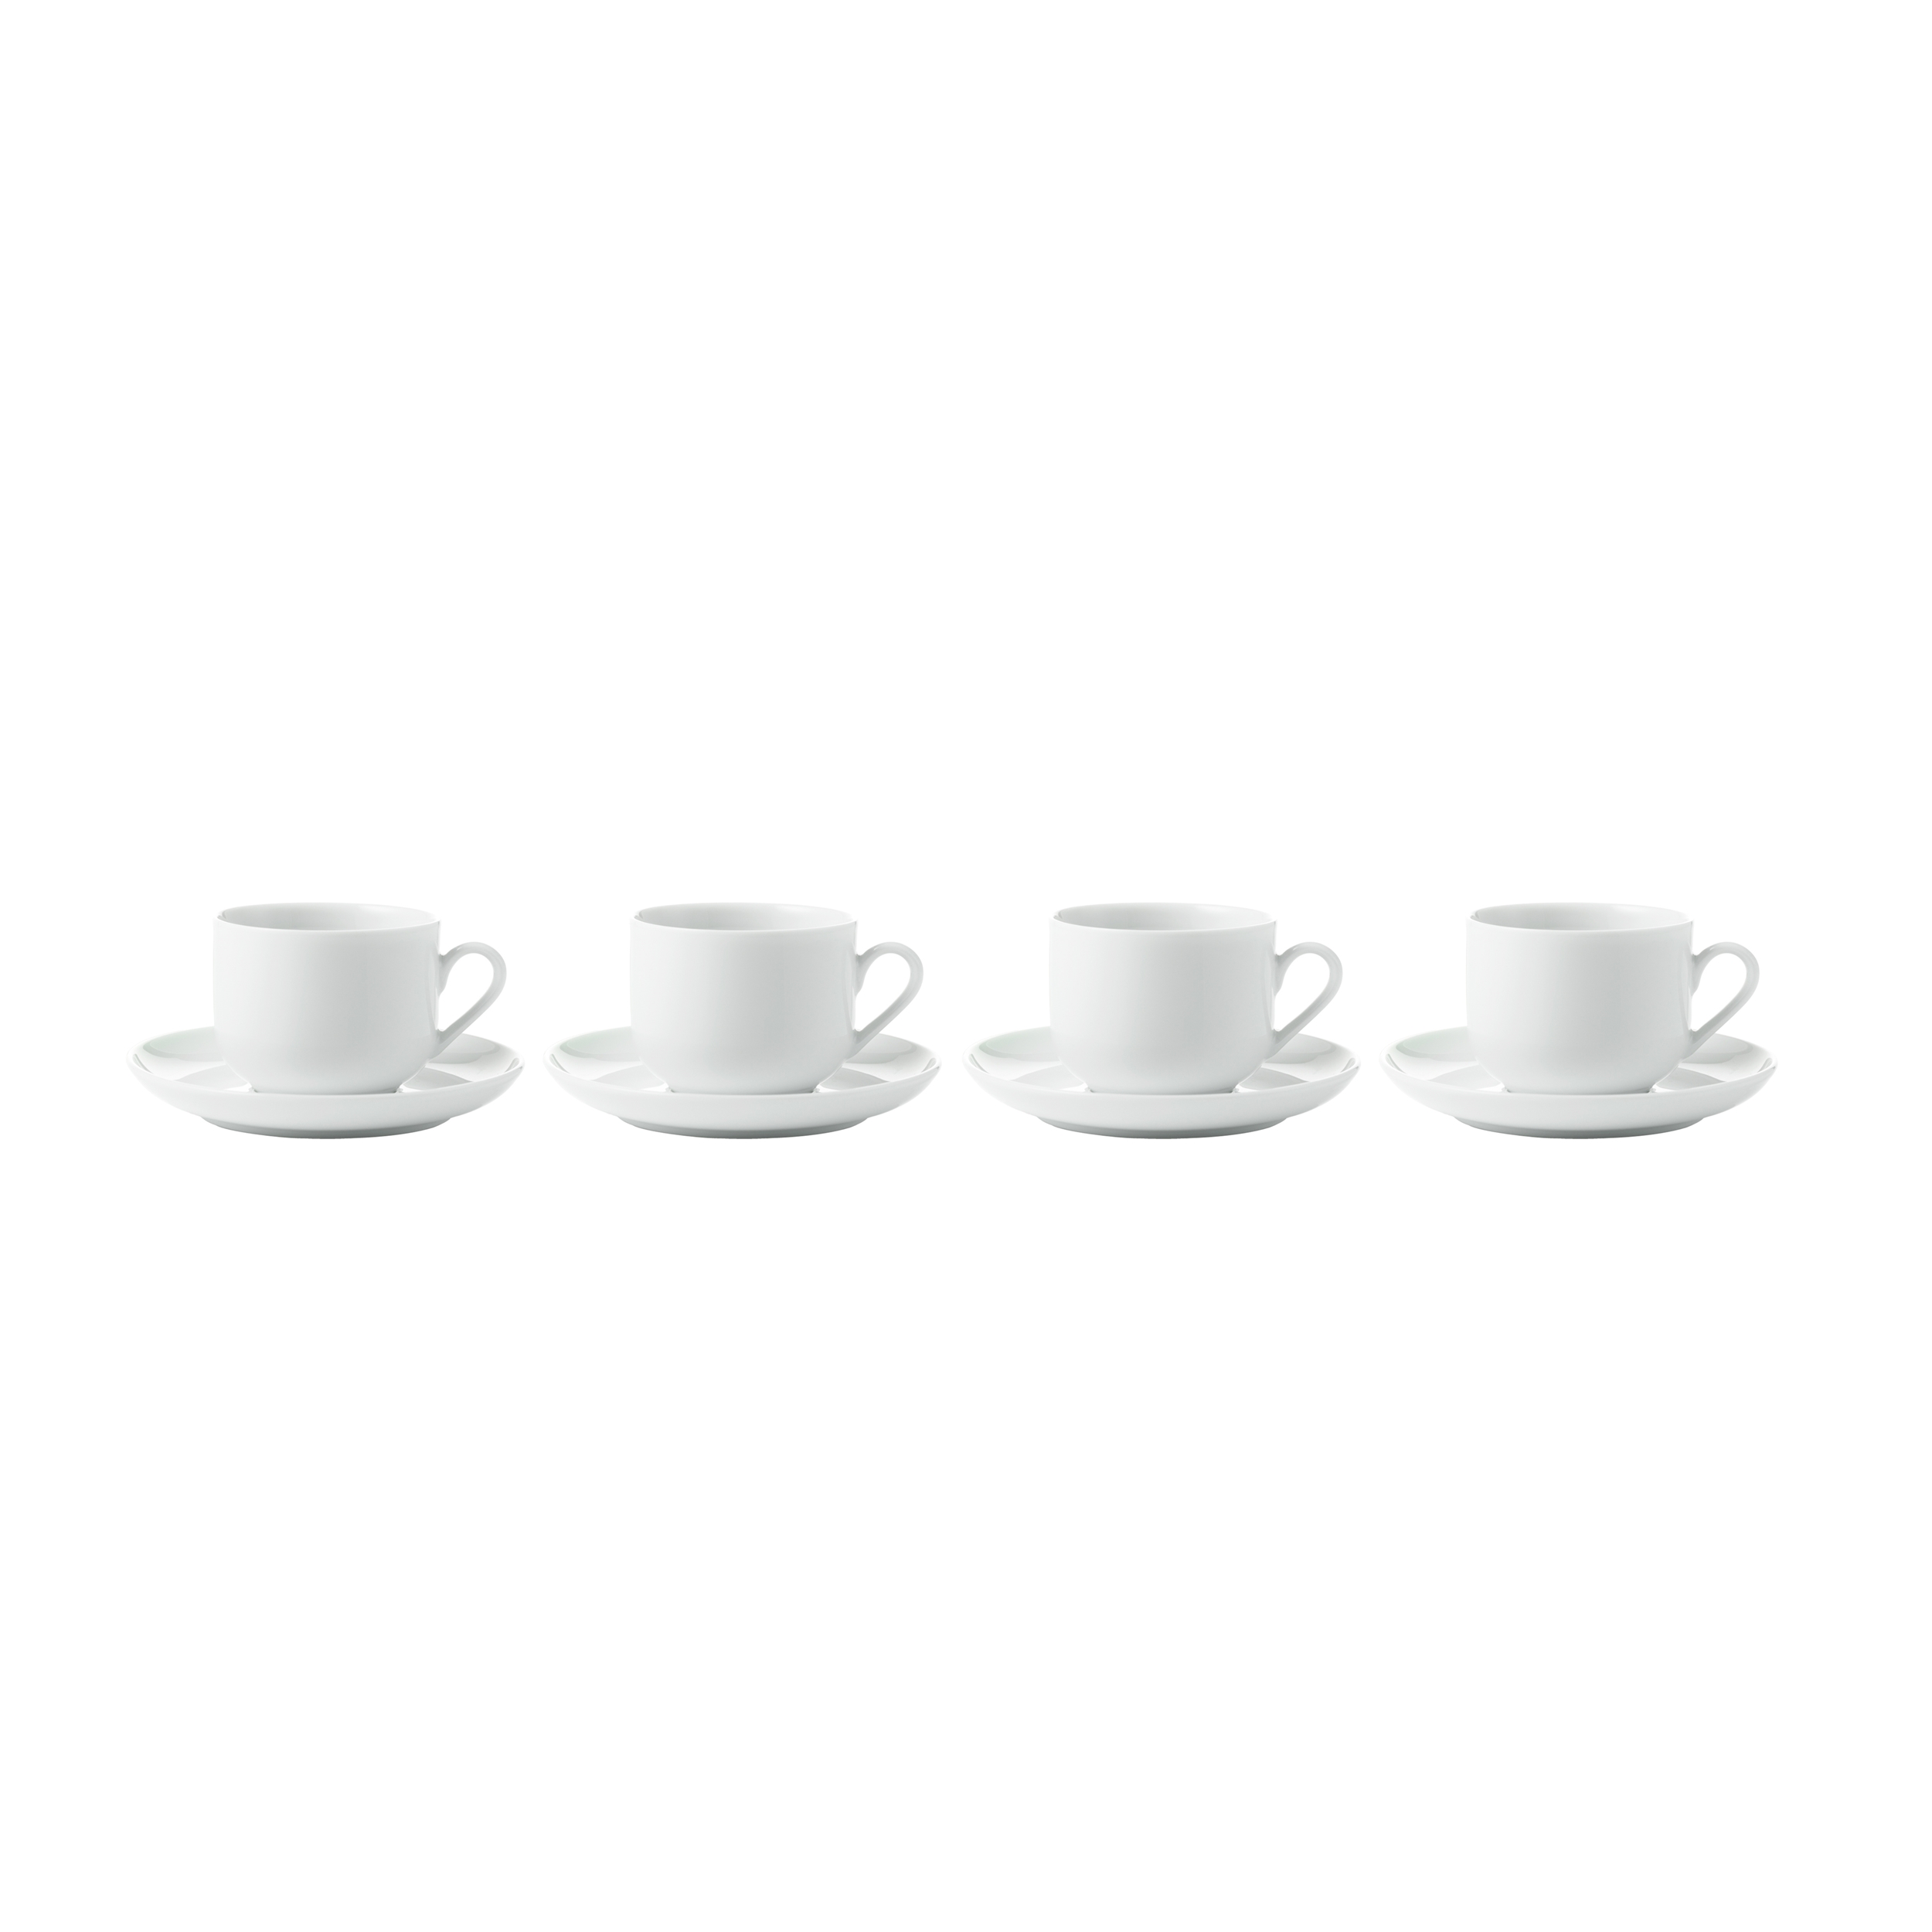 Kaffeetassen mit Unterteller, 4Stk ""asw"" - Kaffeetassen mit Untertassen - Porzellan Geschirr weiss